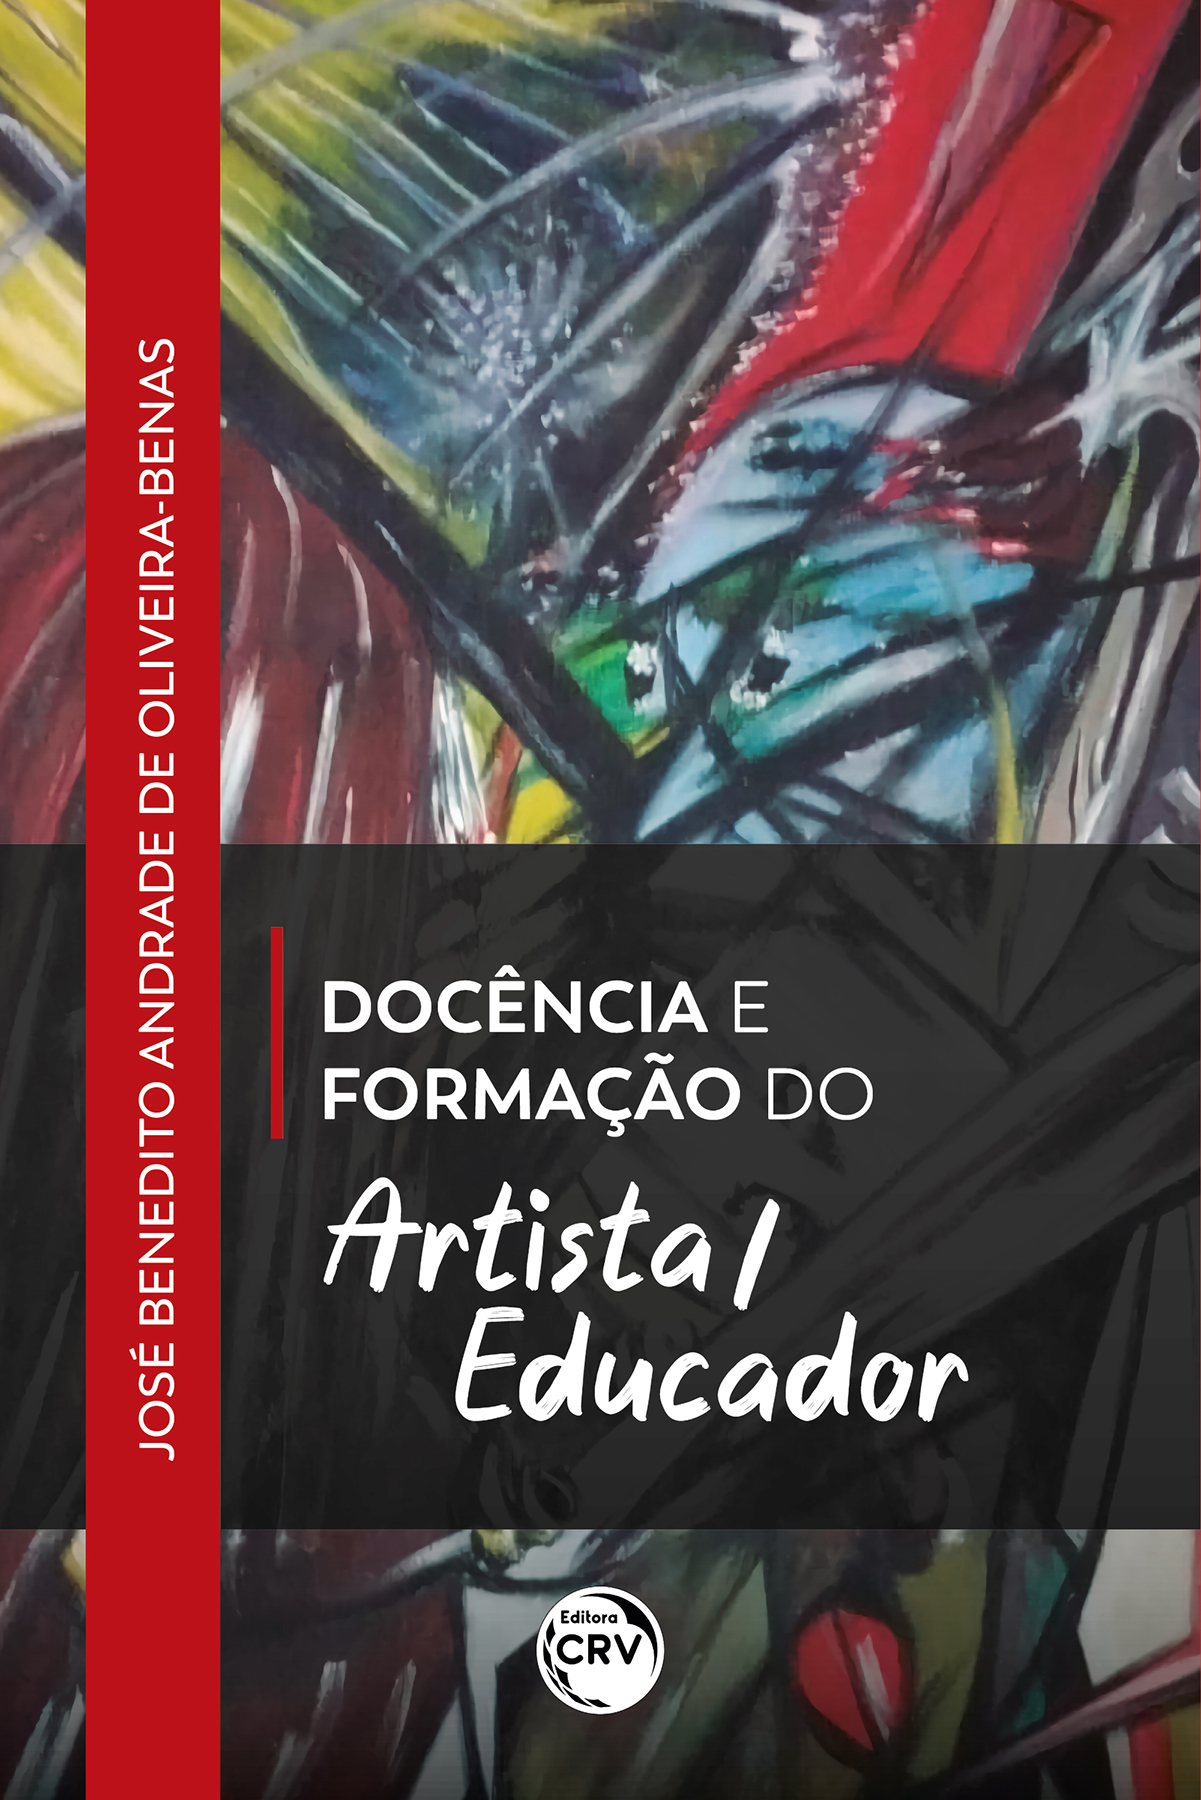 Capa do livro: Docência e formação do artista/educador